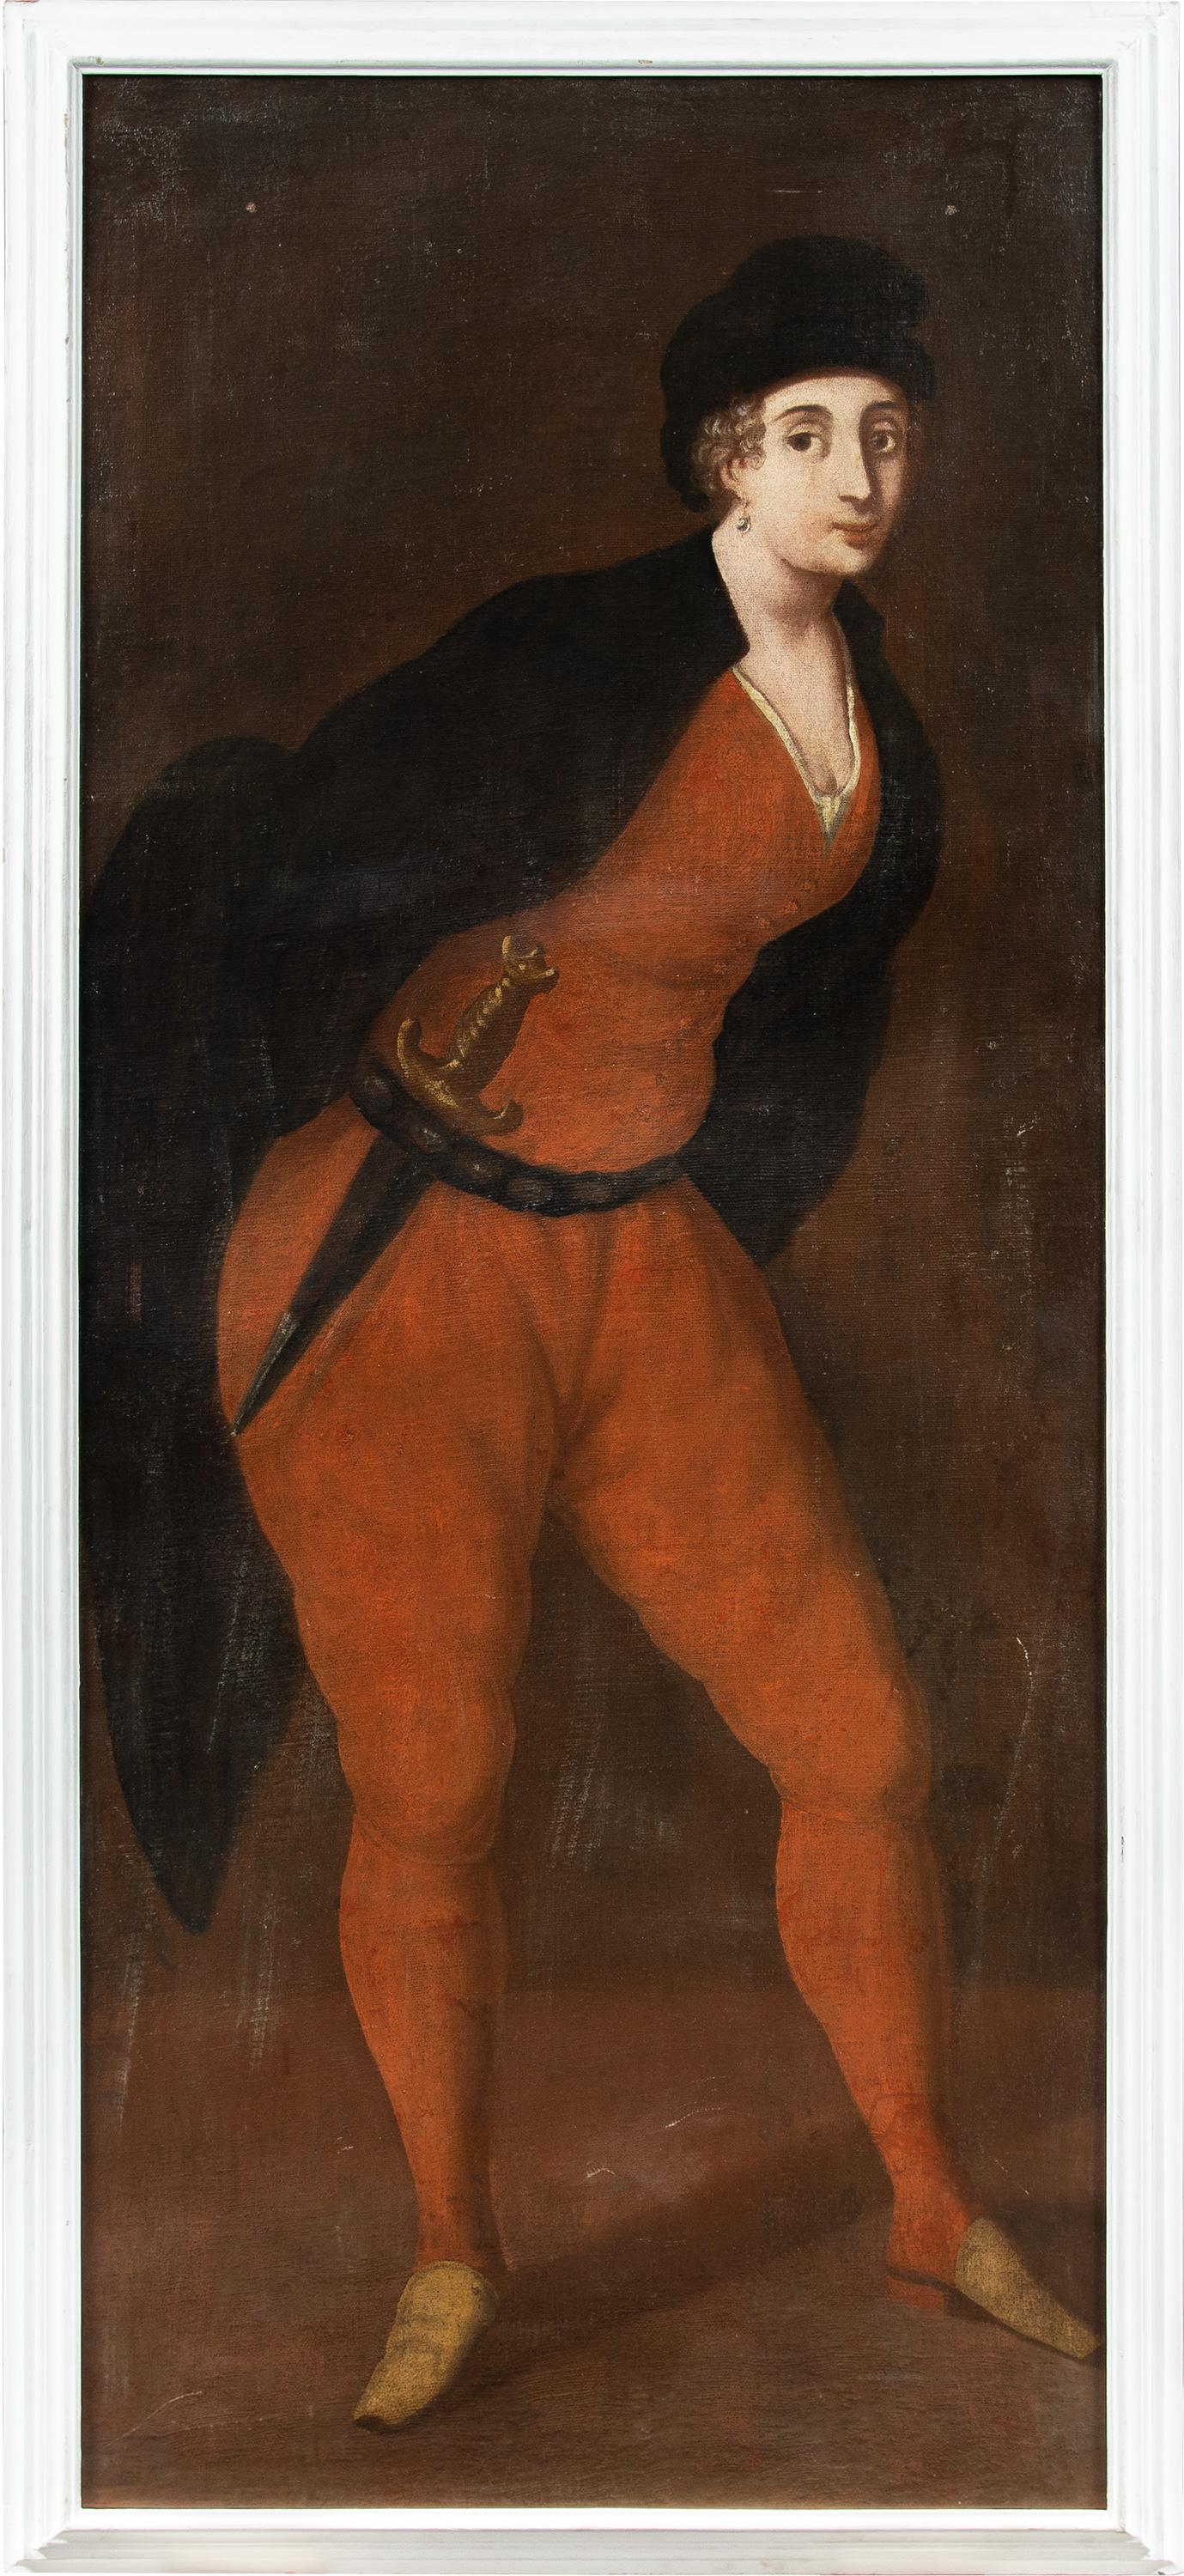 Peintre vénitien Rococò - peinture de masques et figures du 18e siècle - Carnaval de Pantalone